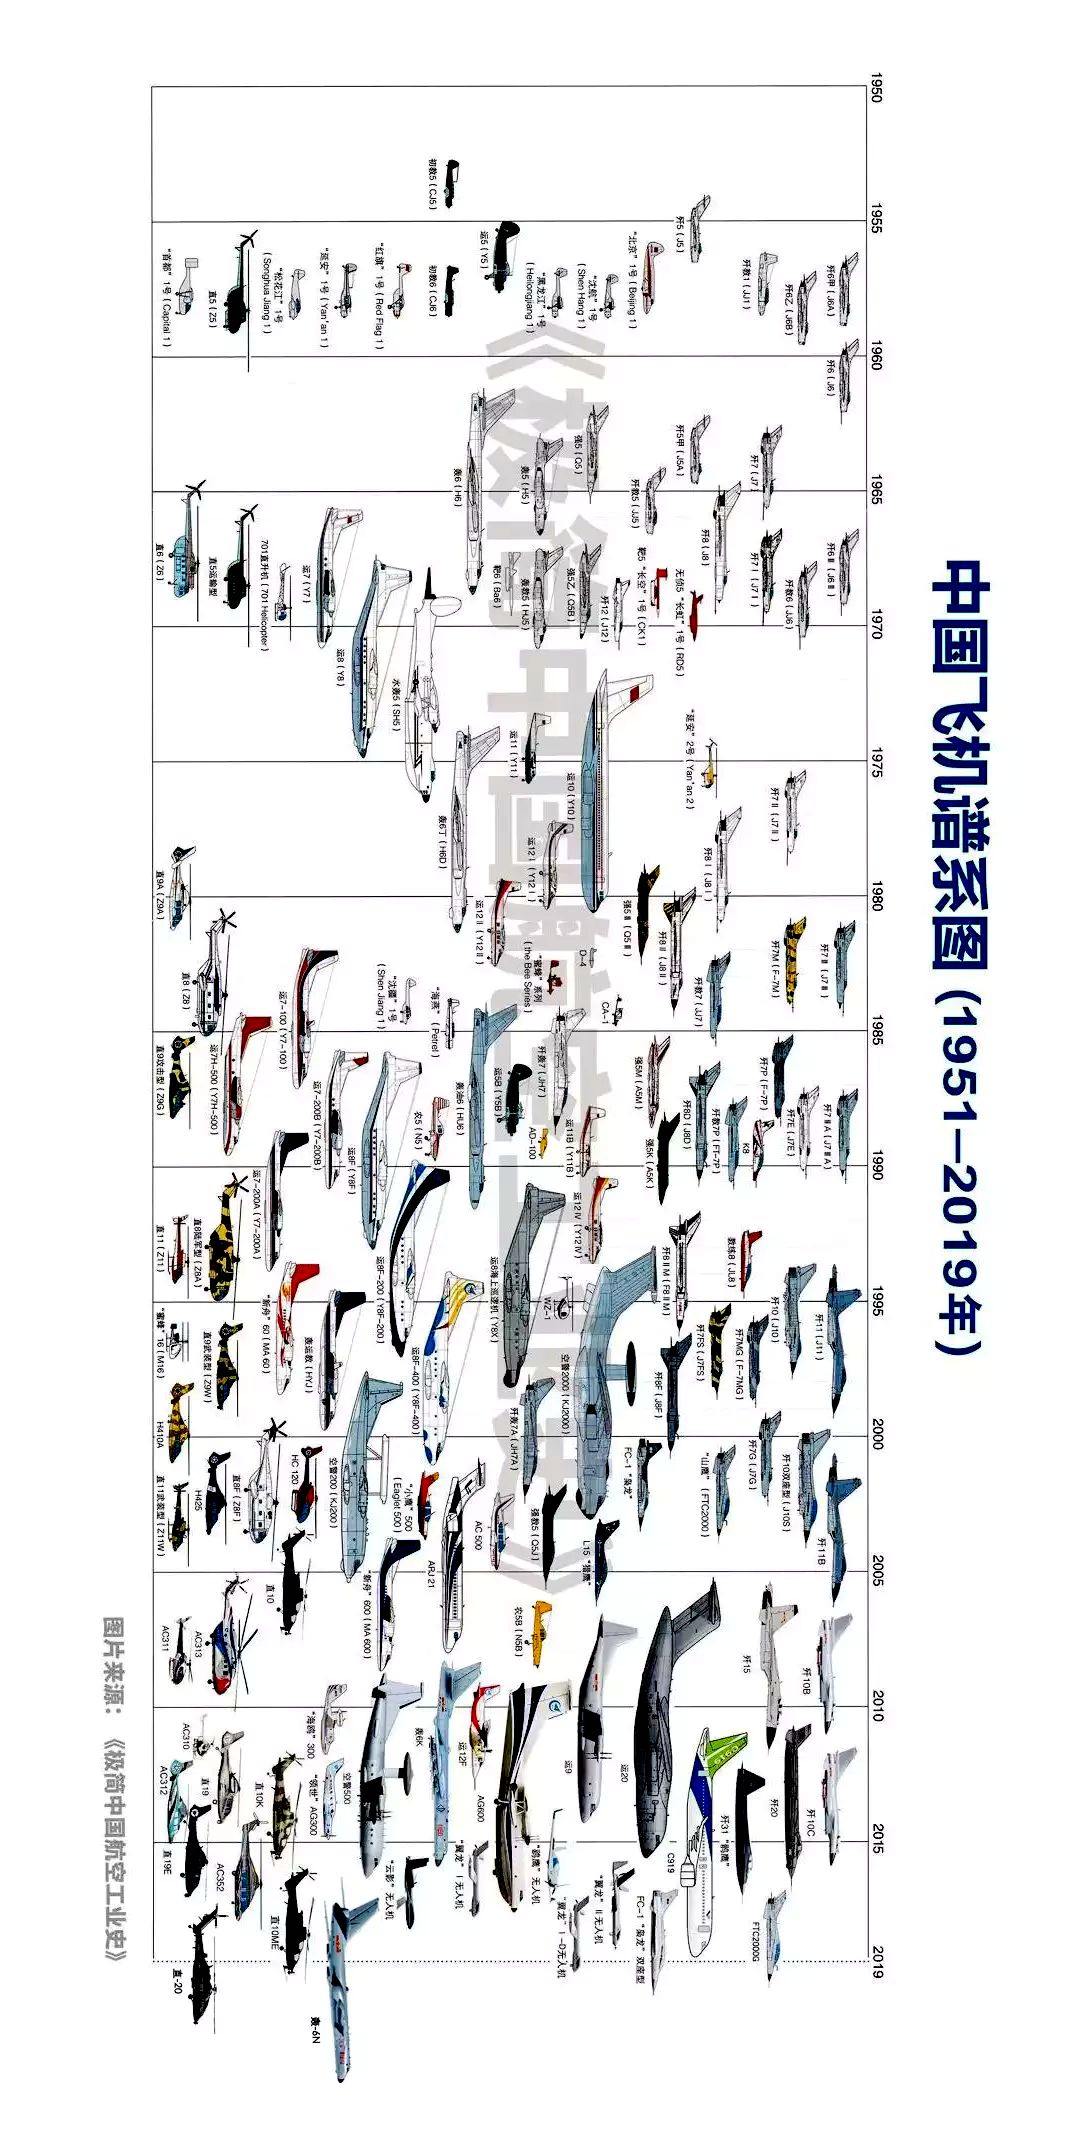 【通航科普】中国军机发展简史(附:中国飞机谱系图)